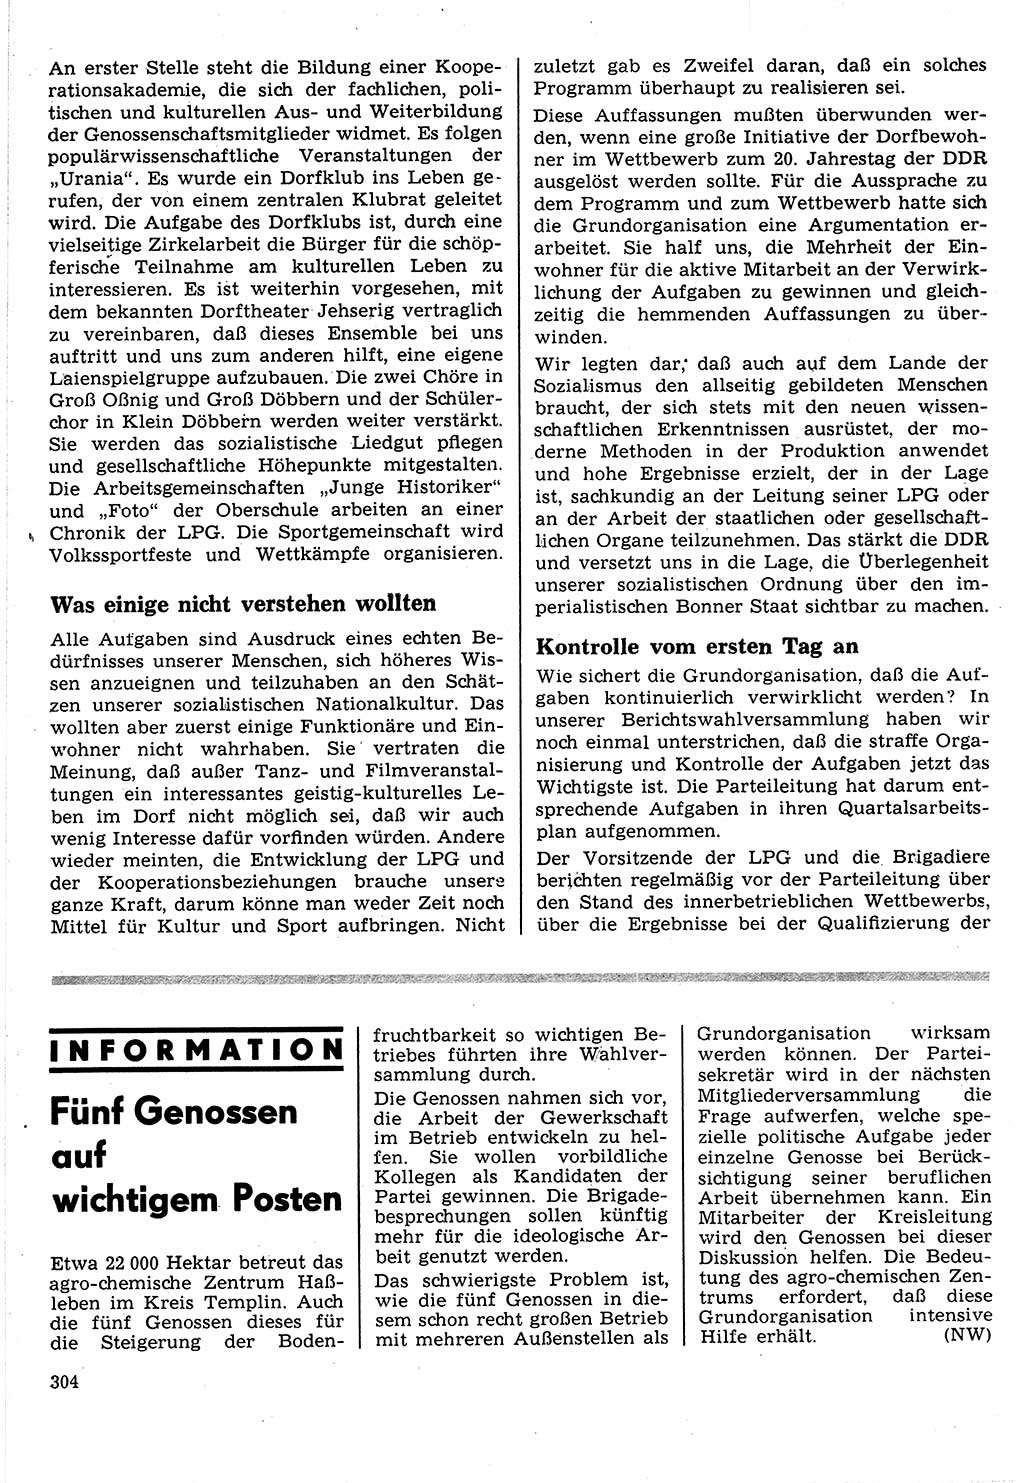 Neuer Weg (NW), Organ des Zentralkomitees (ZK) der SED (Sozialistische Einheitspartei Deutschlands) für Fragen des Parteilebens, 24. Jahrgang [Deutsche Demokratische Republik (DDR)] 1969, Seite 304 (NW ZK SED DDR 1969, S. 304)